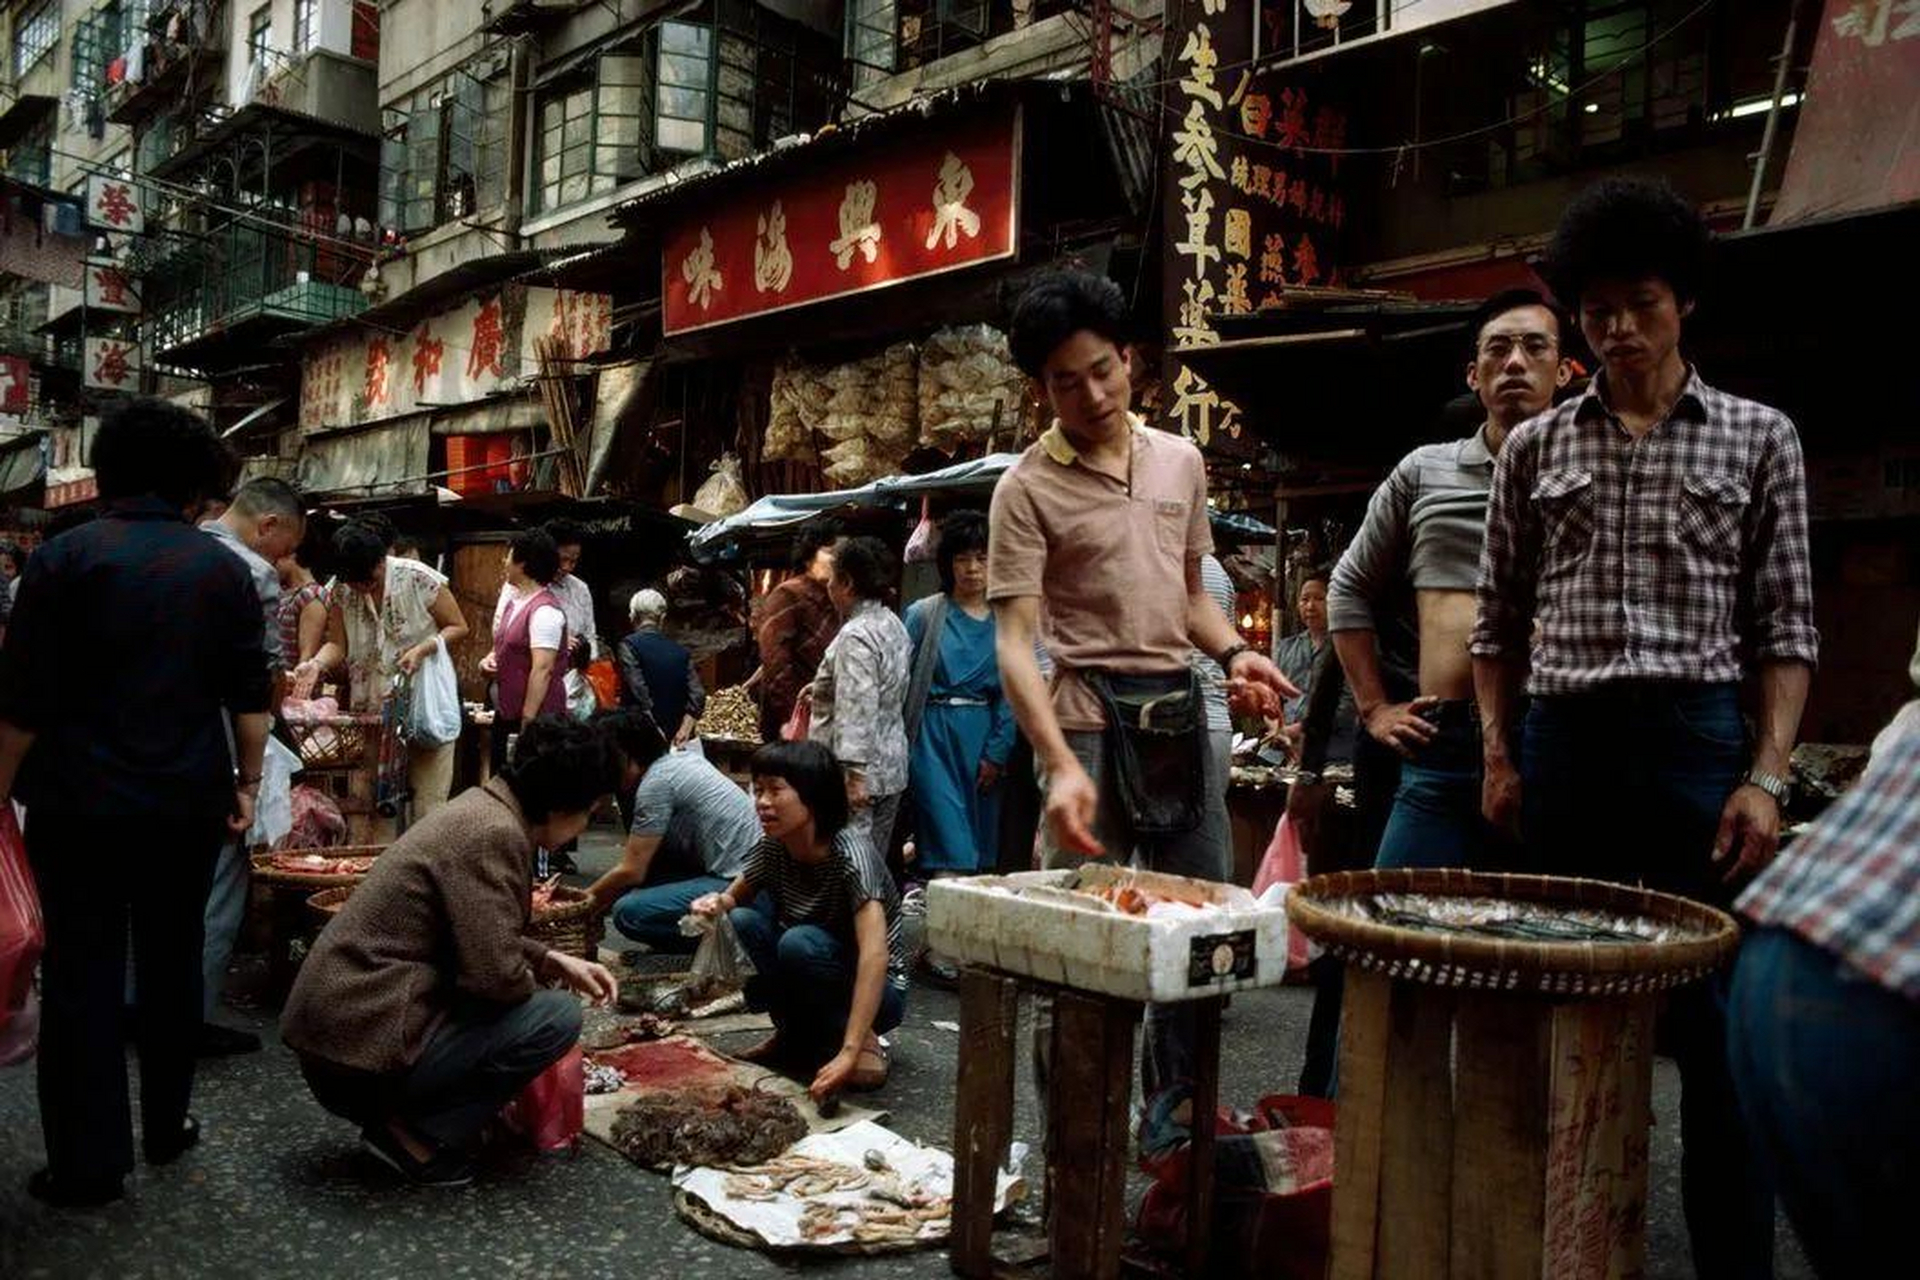 80年代香港 街道图片